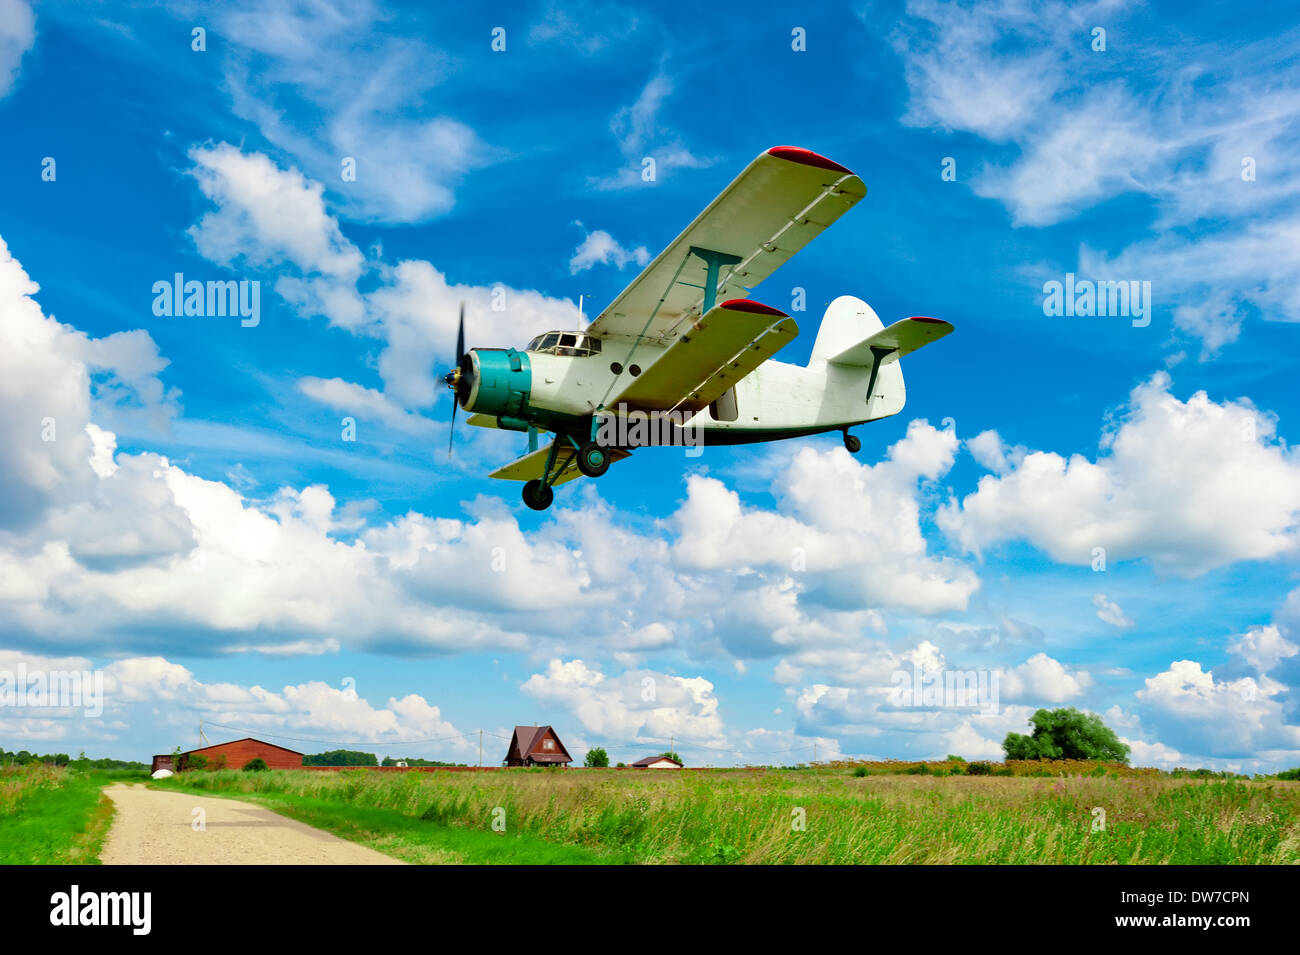 Avions agricoles volant à basse altitude au-dessus d'un champ Banque D'Images